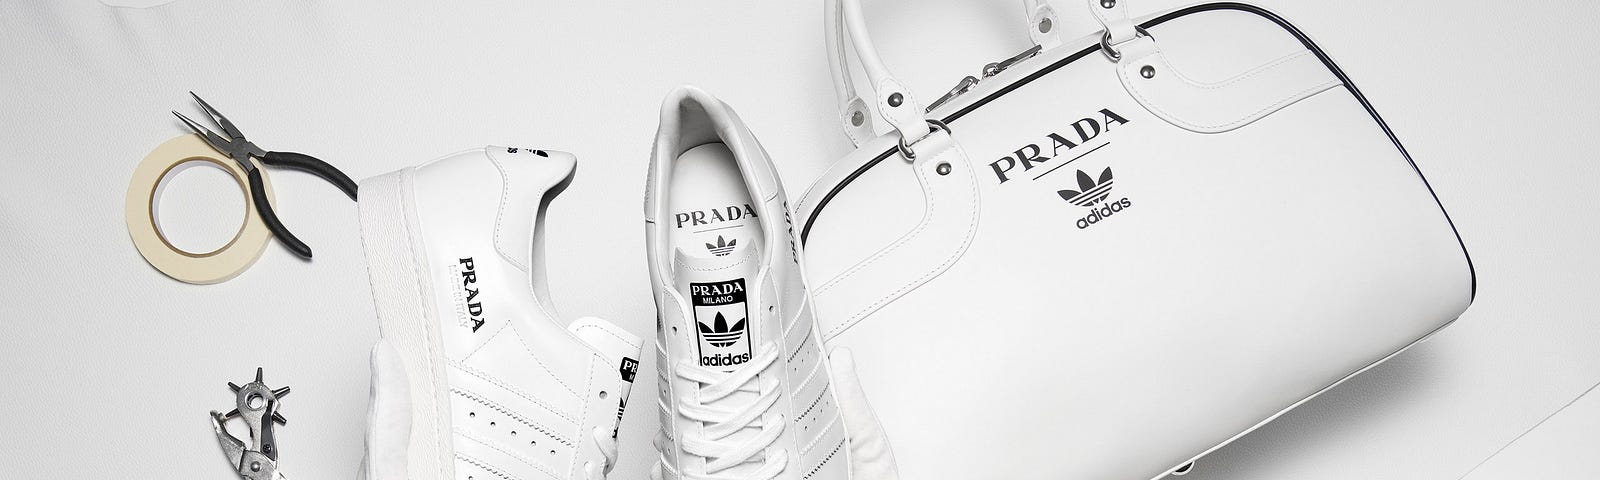 Prada for Adidas